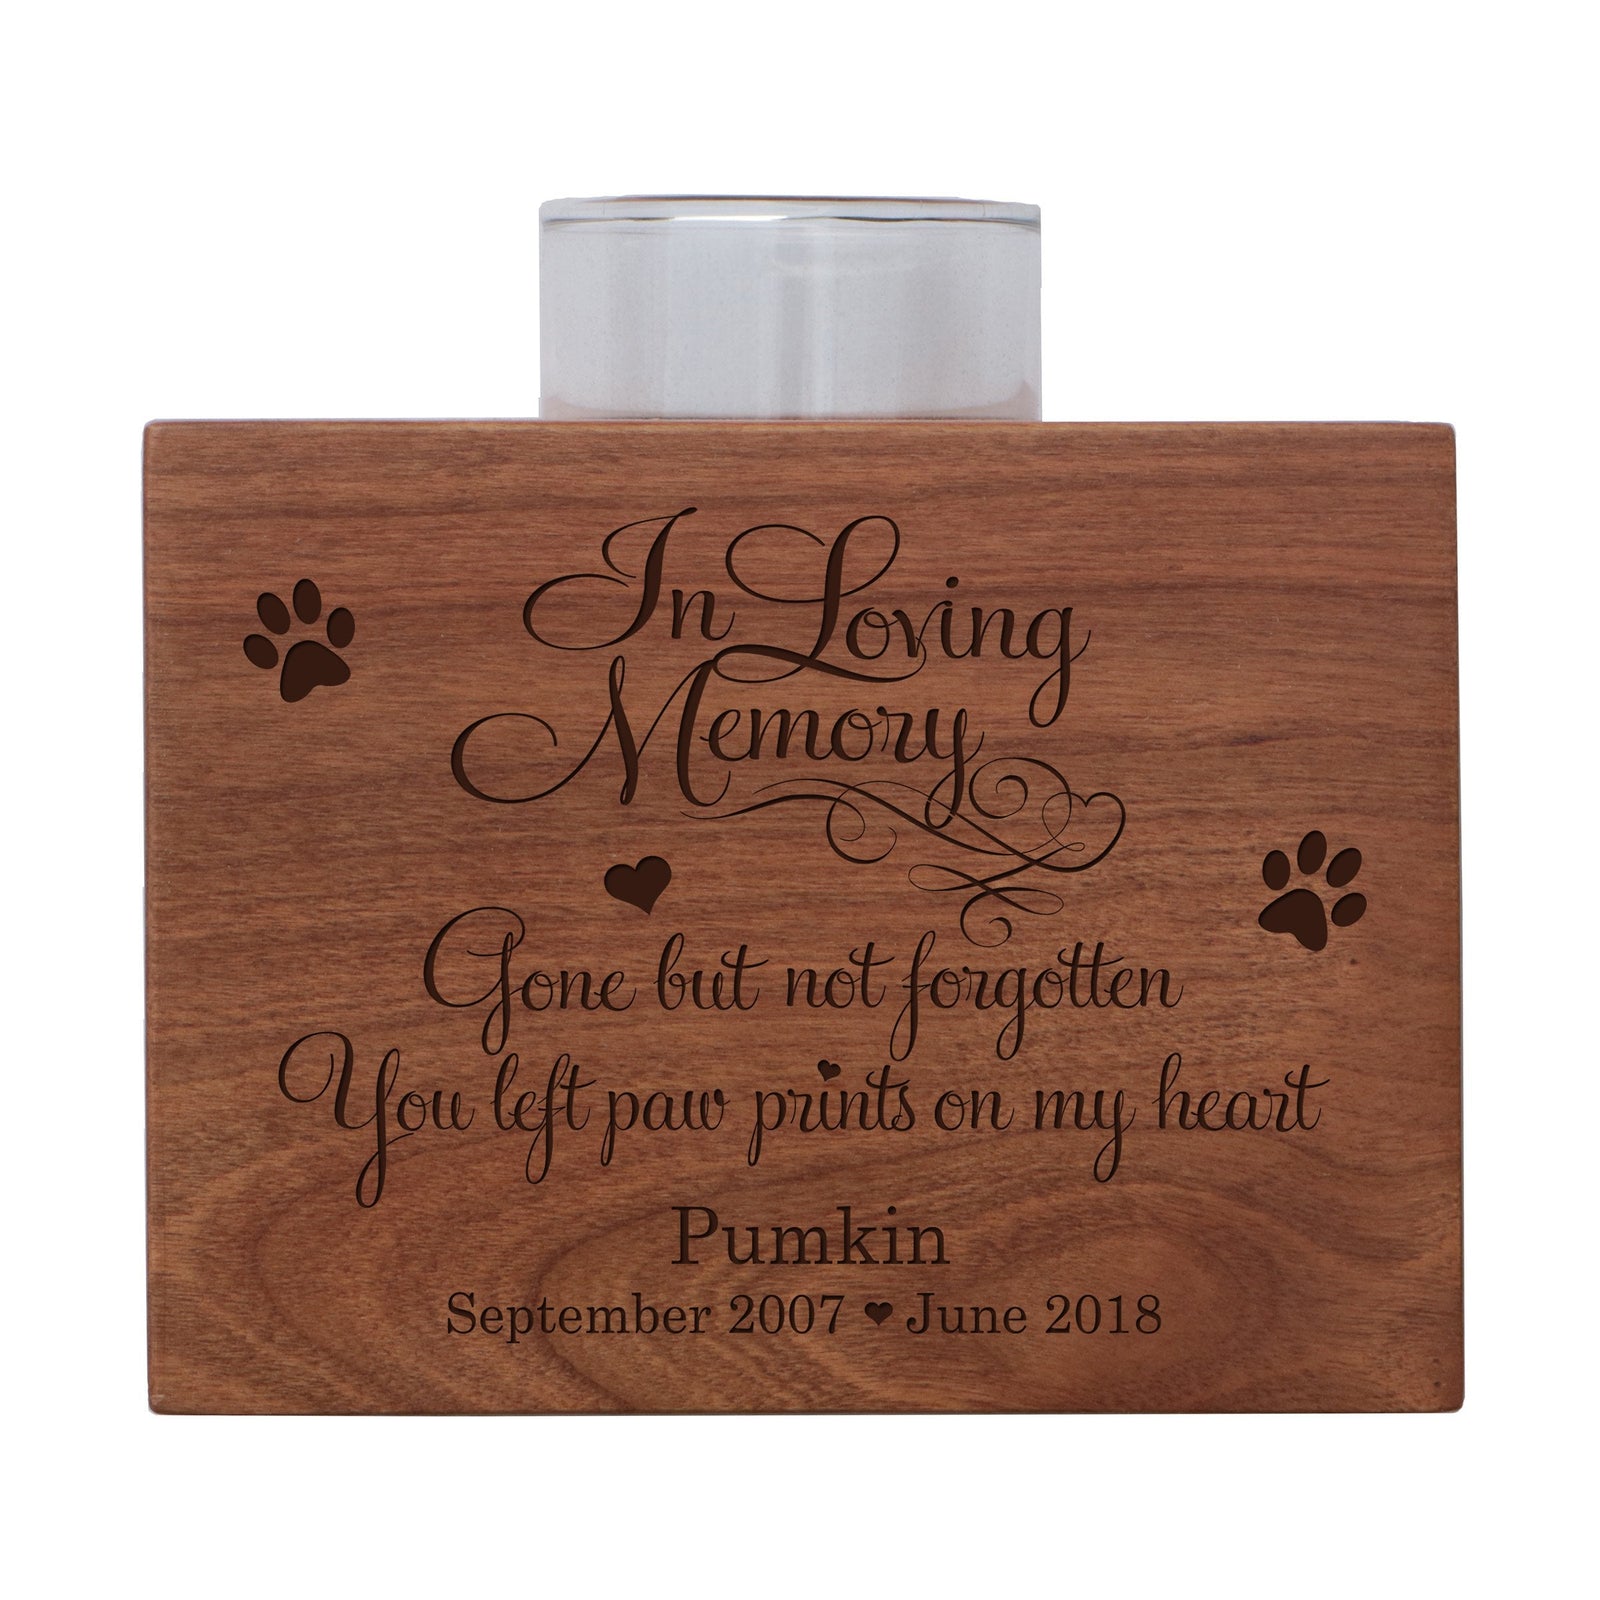 Treasure Your Pet Personalized Memorial Single Candle Holders In Loving Memory Loss of Pet Keepsake